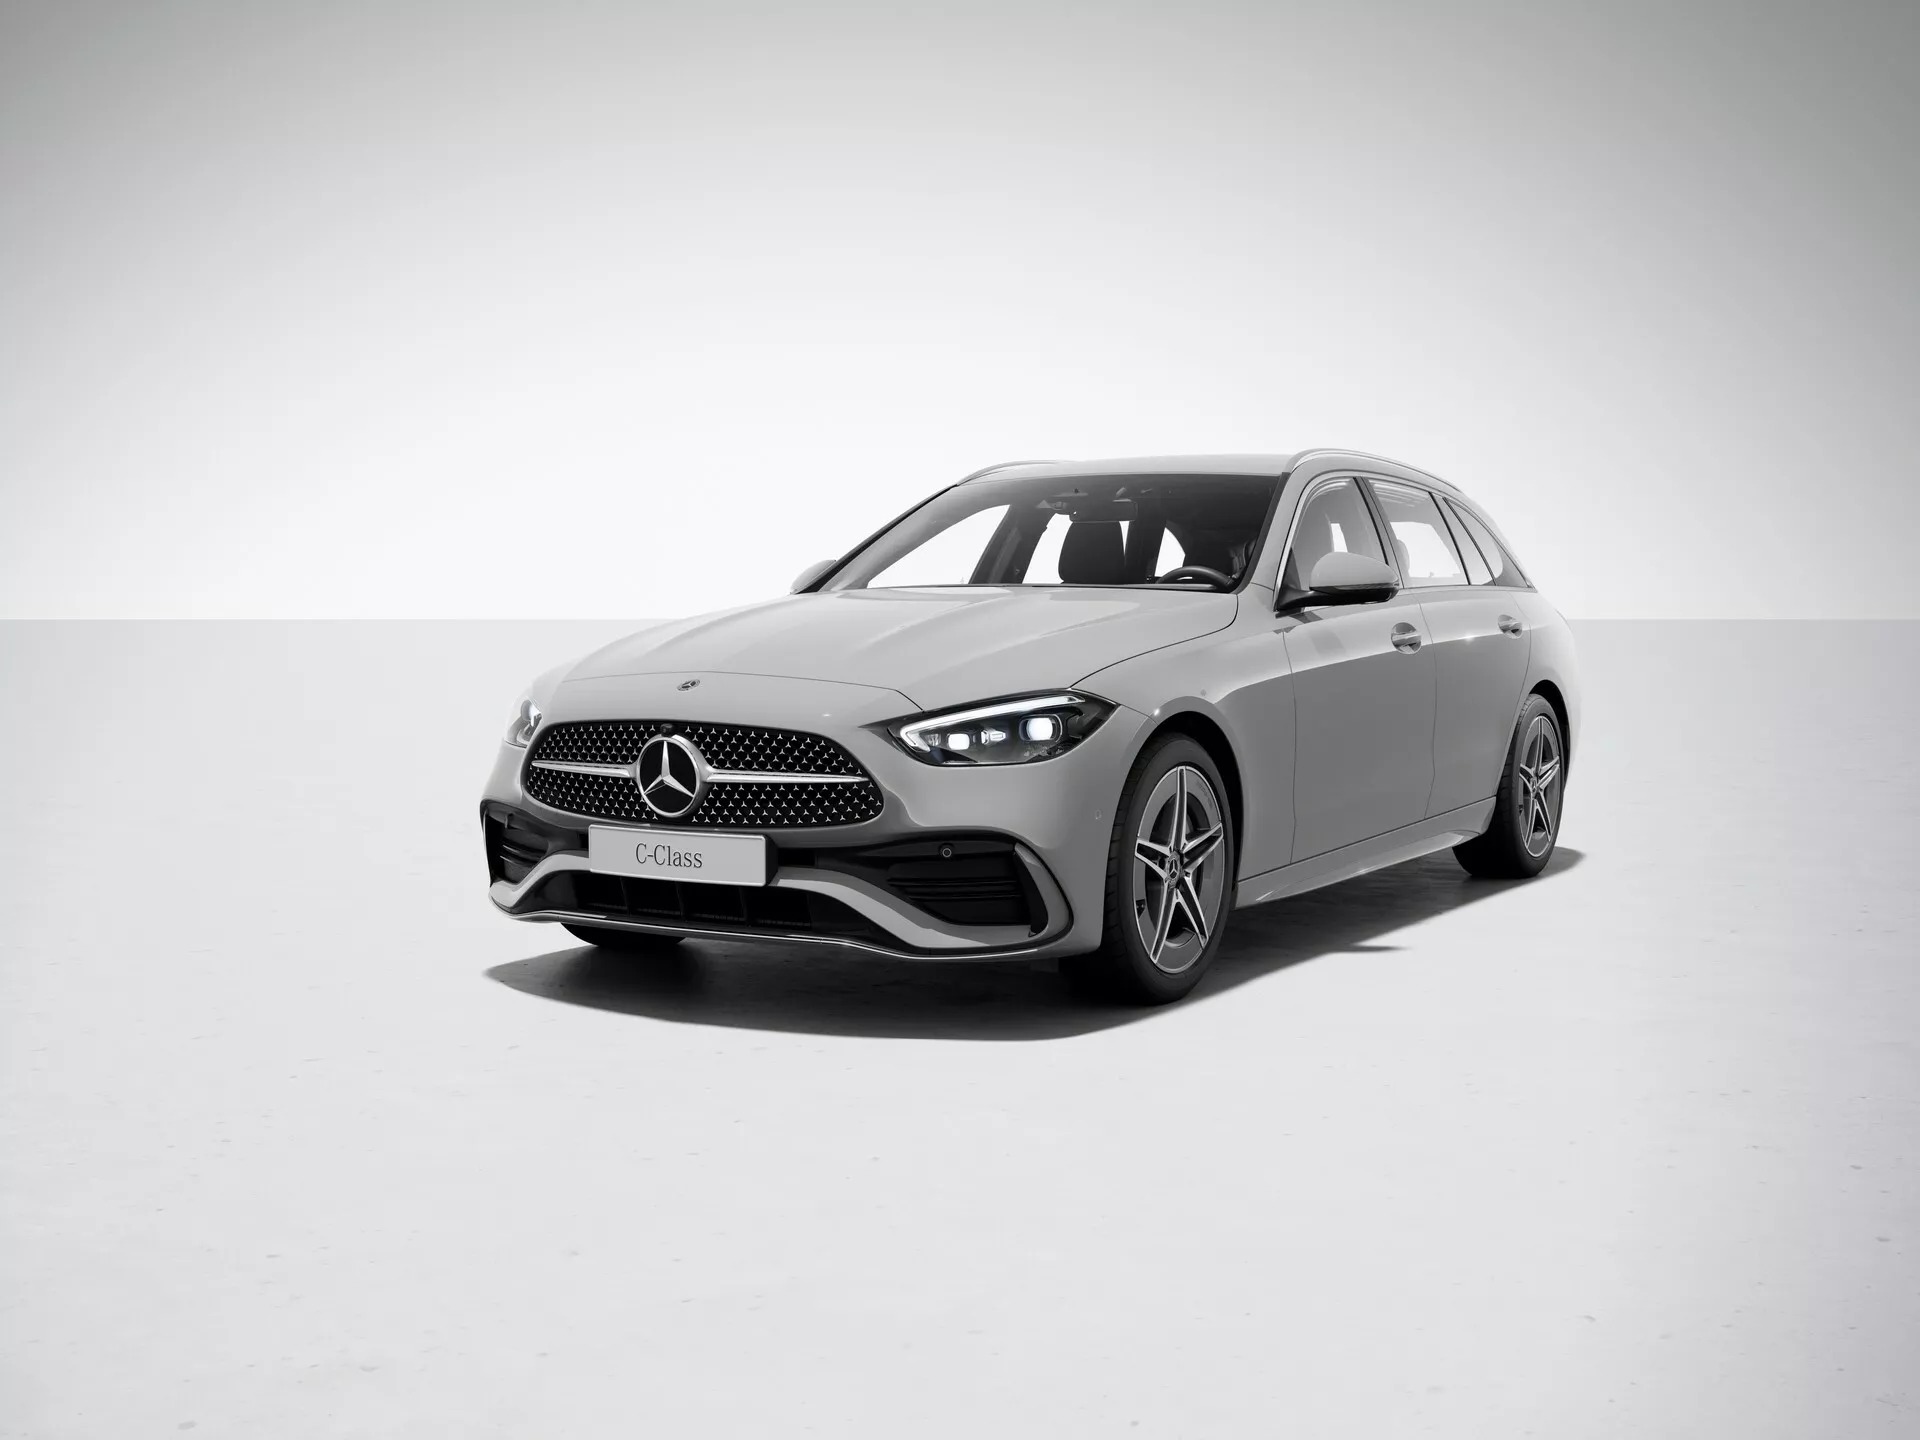 Mercedes-Benz C-Class và GLC sắp nâng cấp: Hệ thống giải trí xịn hơn, màu sơn nhiều hơn, riêng GLC bổ sung trang bị nhiều người mong đợi- Ảnh 3.